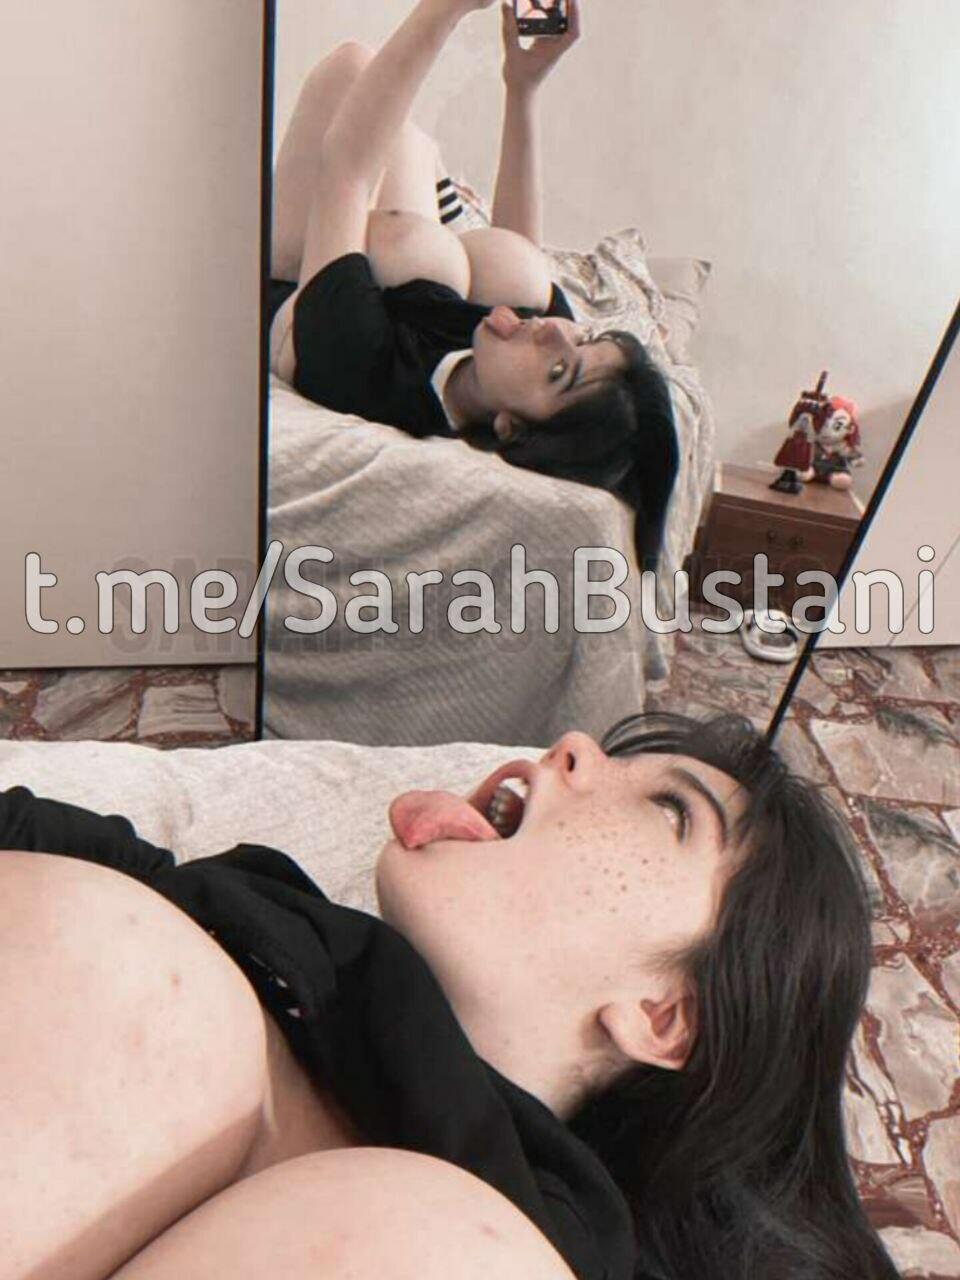 Sarah Bustani Bustanutters Sarahbustani Sarahbustani69 Nude Onlyfans Leaks 10 Photos 8989